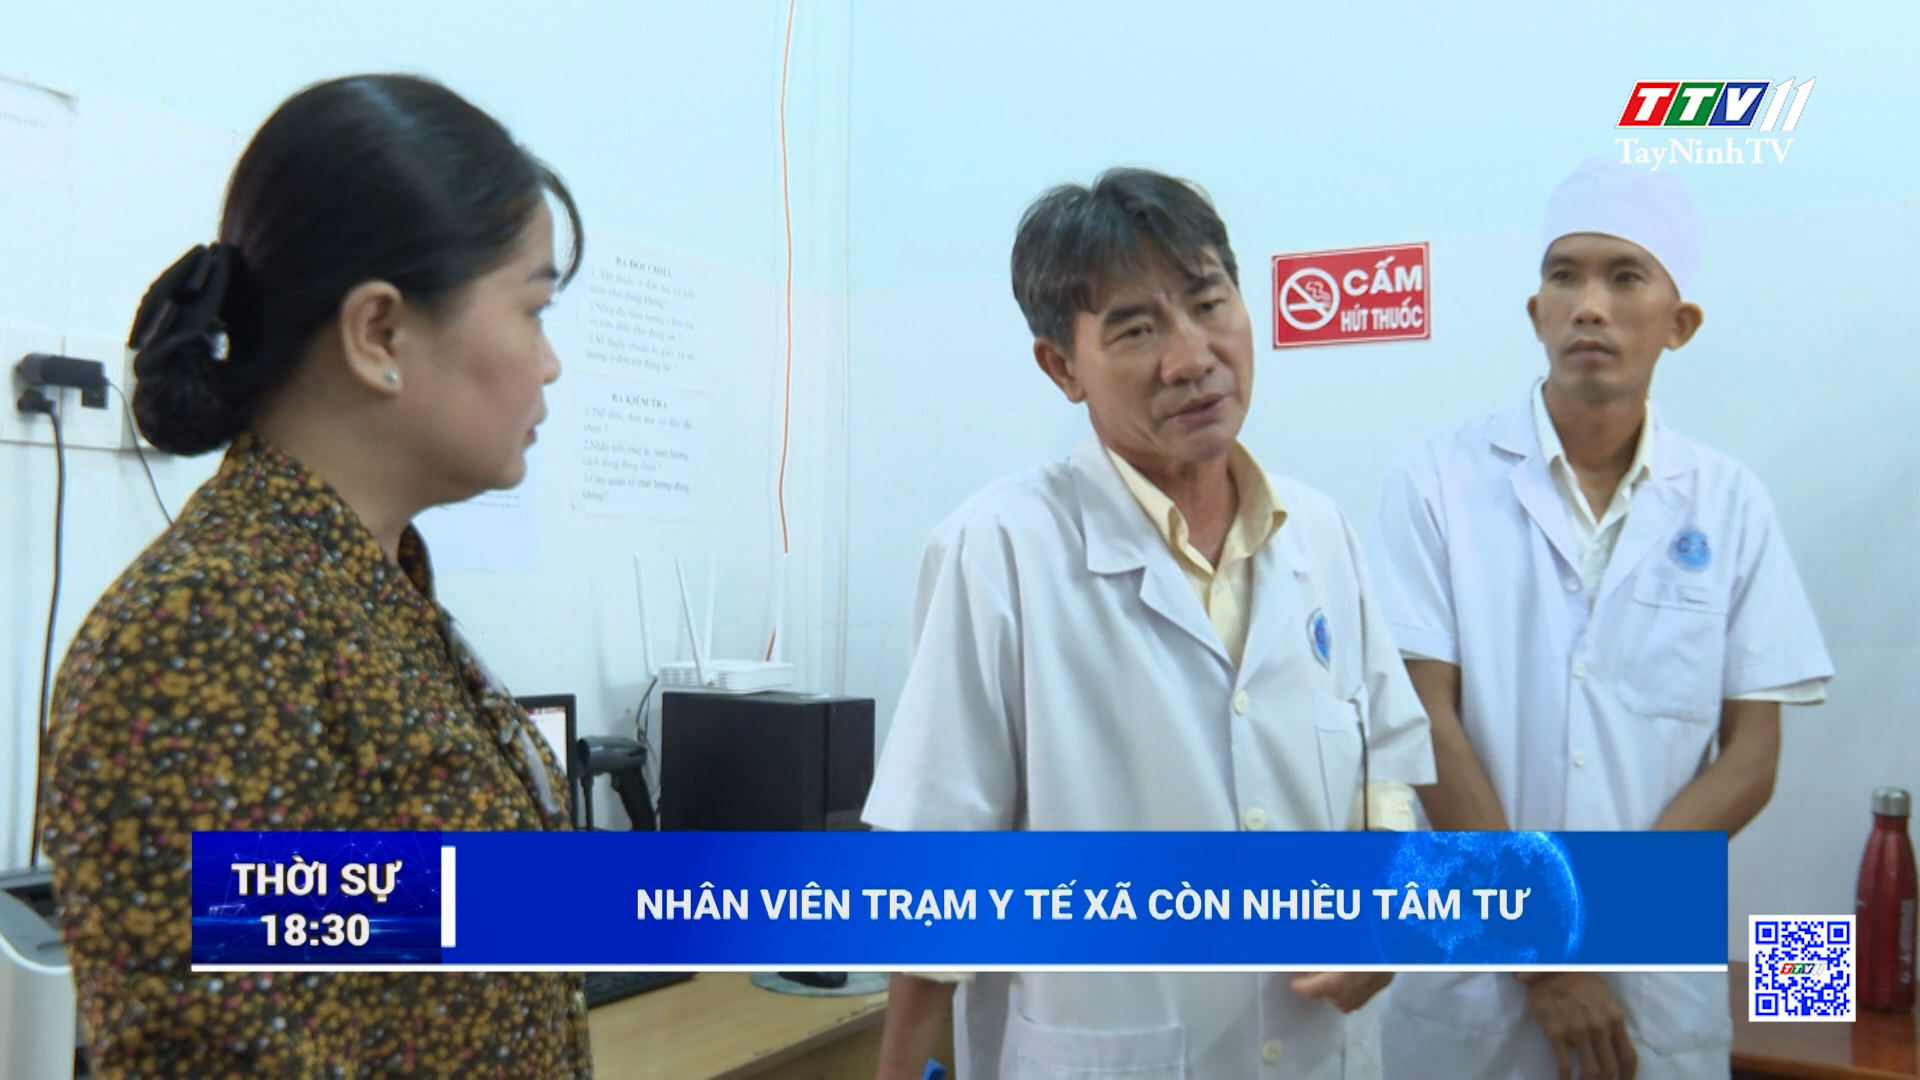 Nhân viên trạm y tế xã còn nhiều tâm tư | TayNinhTV